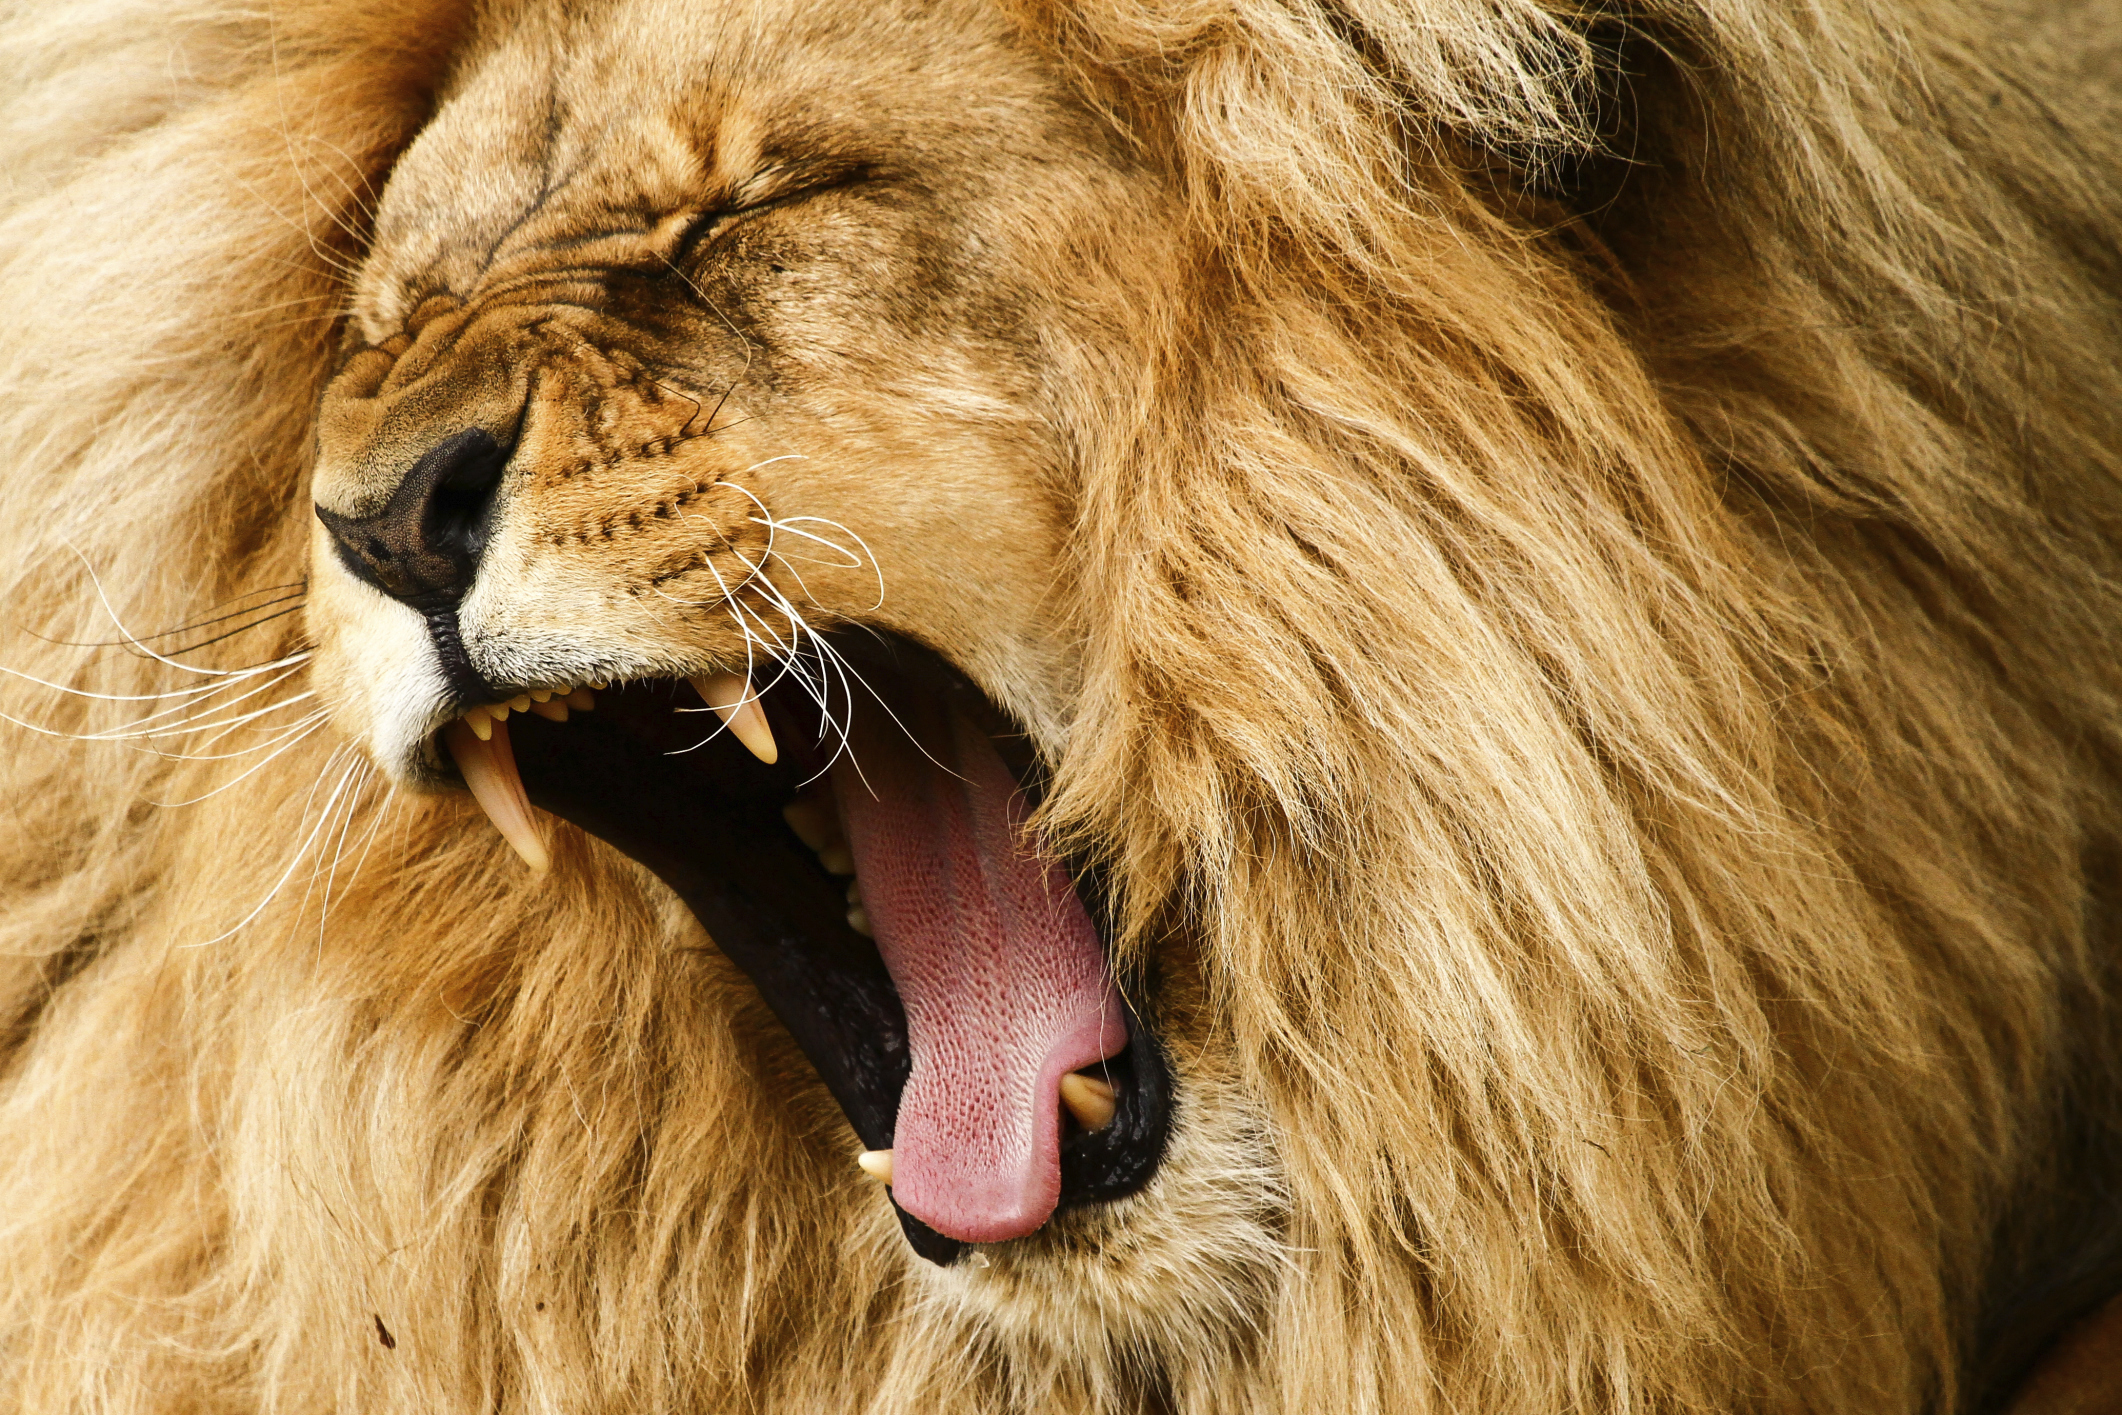 The Lions Roar Loot